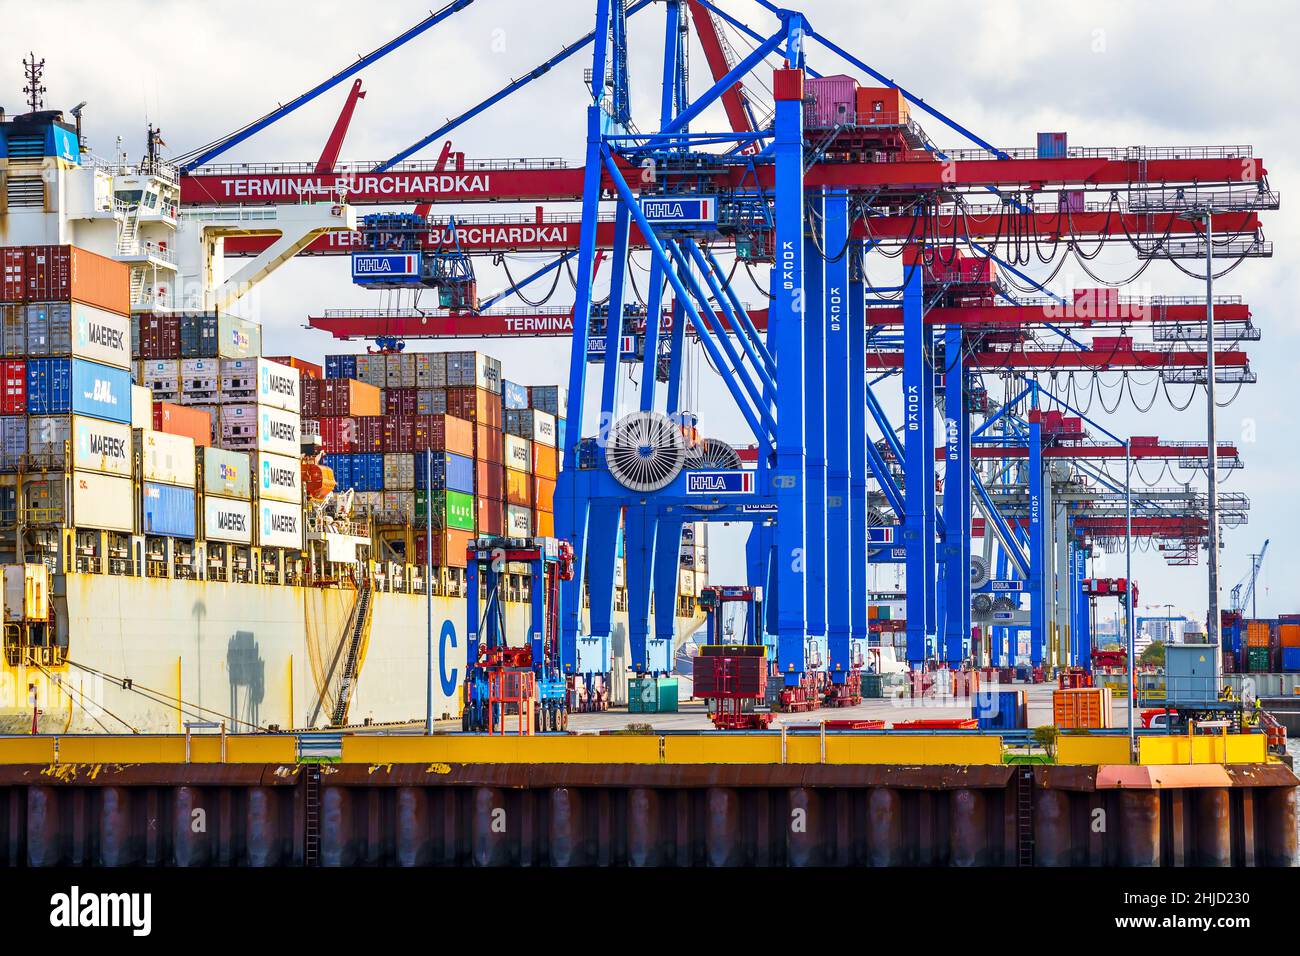 Ein Containerschiff wird tagsüber im Hamburger Hafen beladen; mit blau-rote Containerbrücken werden die Container an die richtige position bugsiert Foto de stock